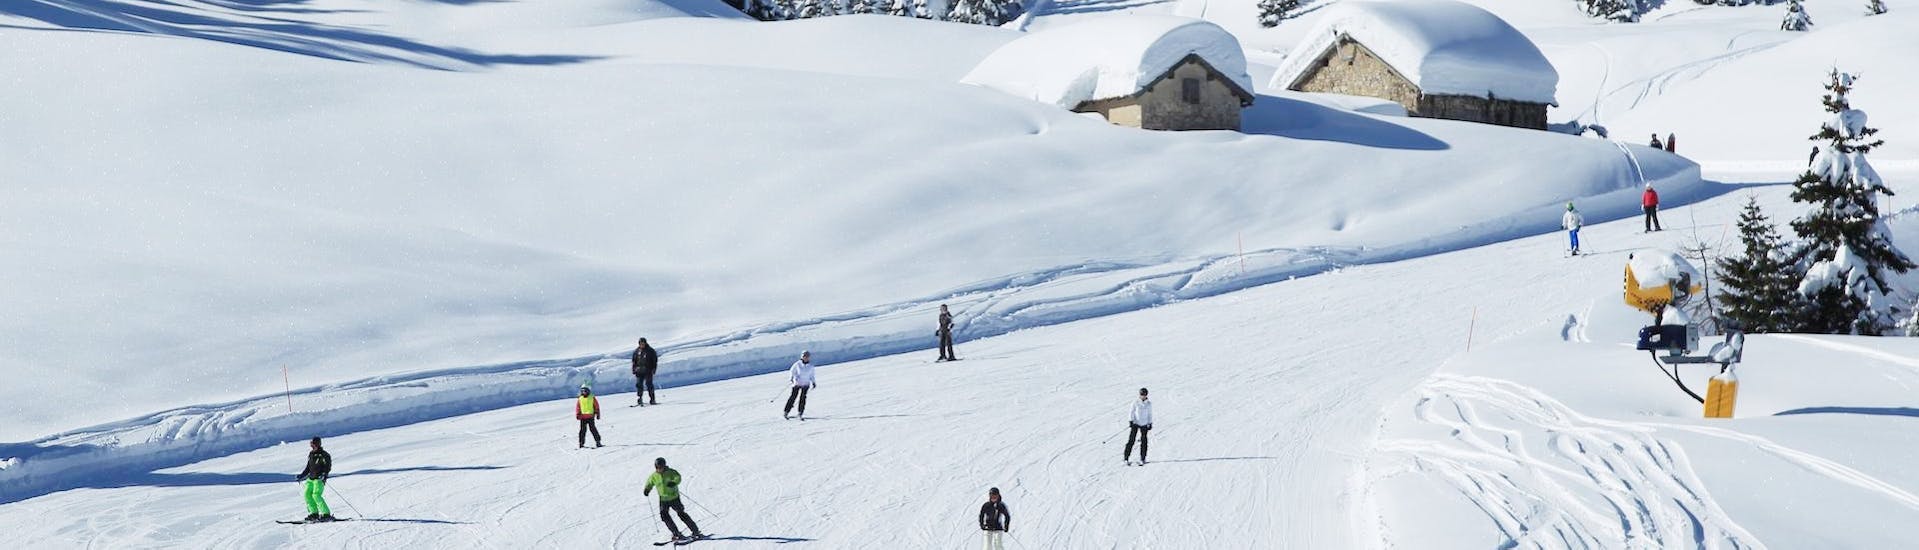 Pista innevata dove si tengono le Lezioni private di sci per adulti per tutti i livelli (dai 15 anni) con Scuola Italiana Sci Folgaria-Fondo Grande.